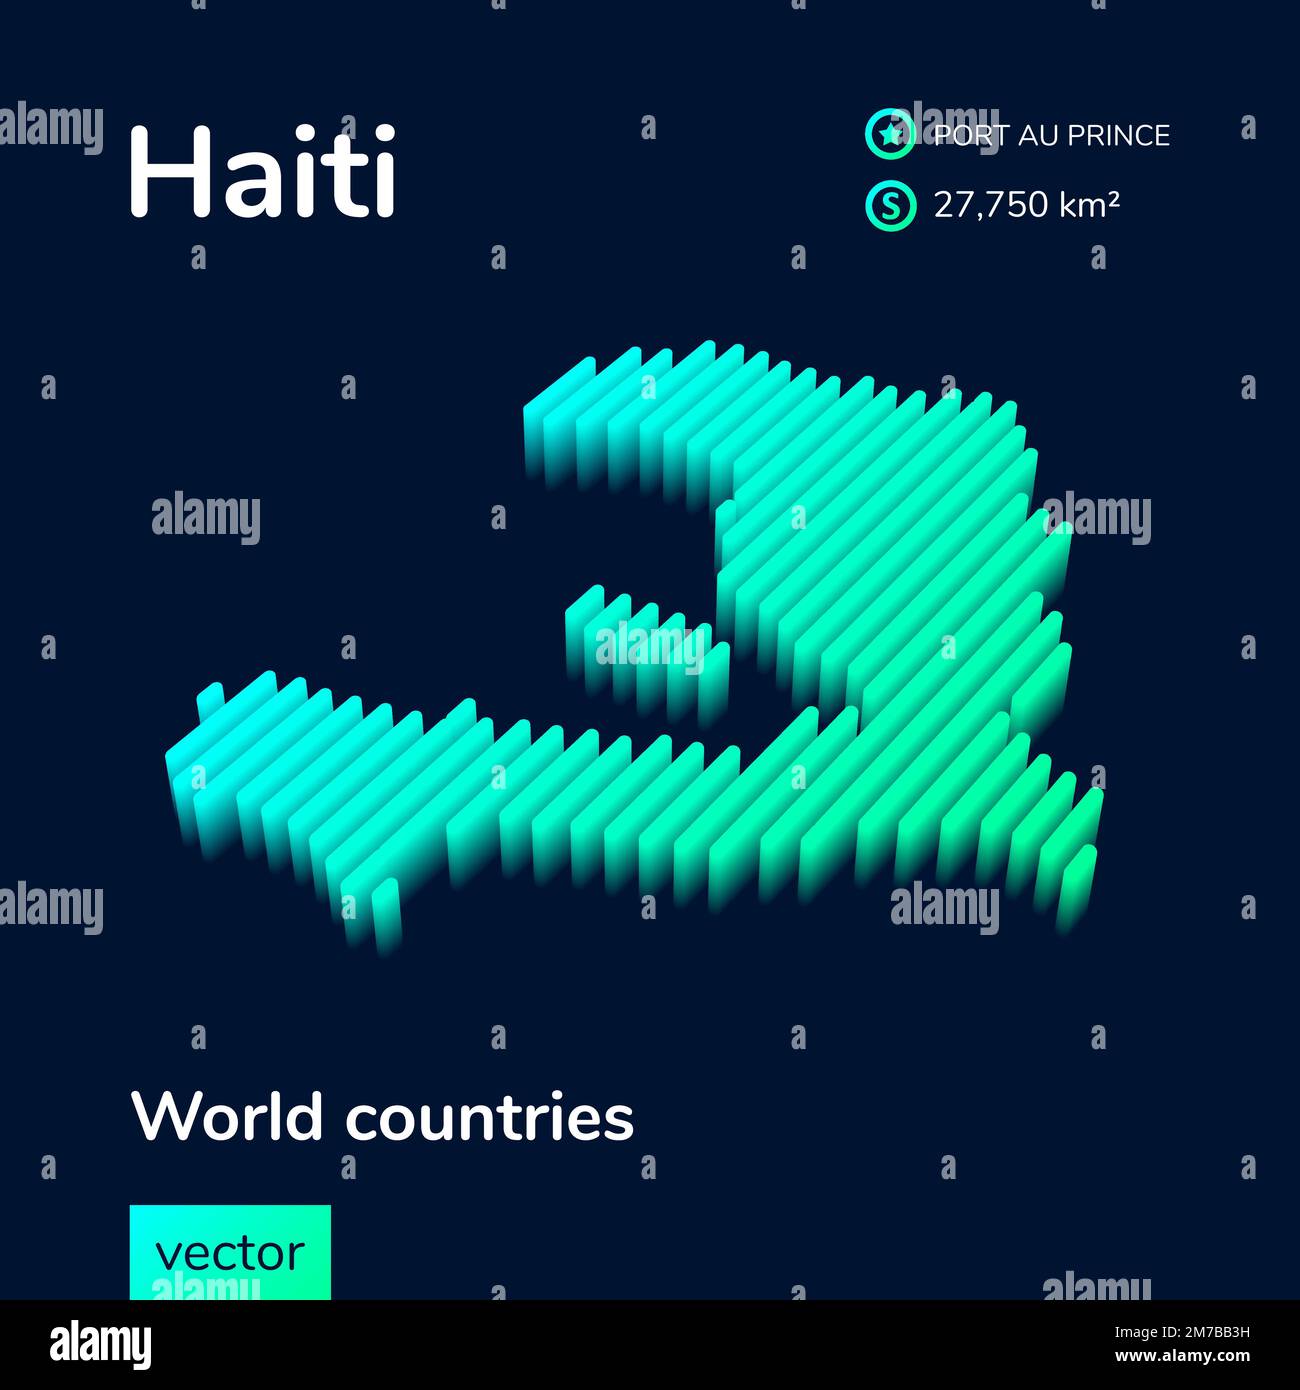 Carte stylisée d'Haïti à vecteur à rayures isométriques au néon avec effet 3D. La carte d'Haïti est en vert et en couleur menthe sur fond bleu foncé Illustration de Vecteur